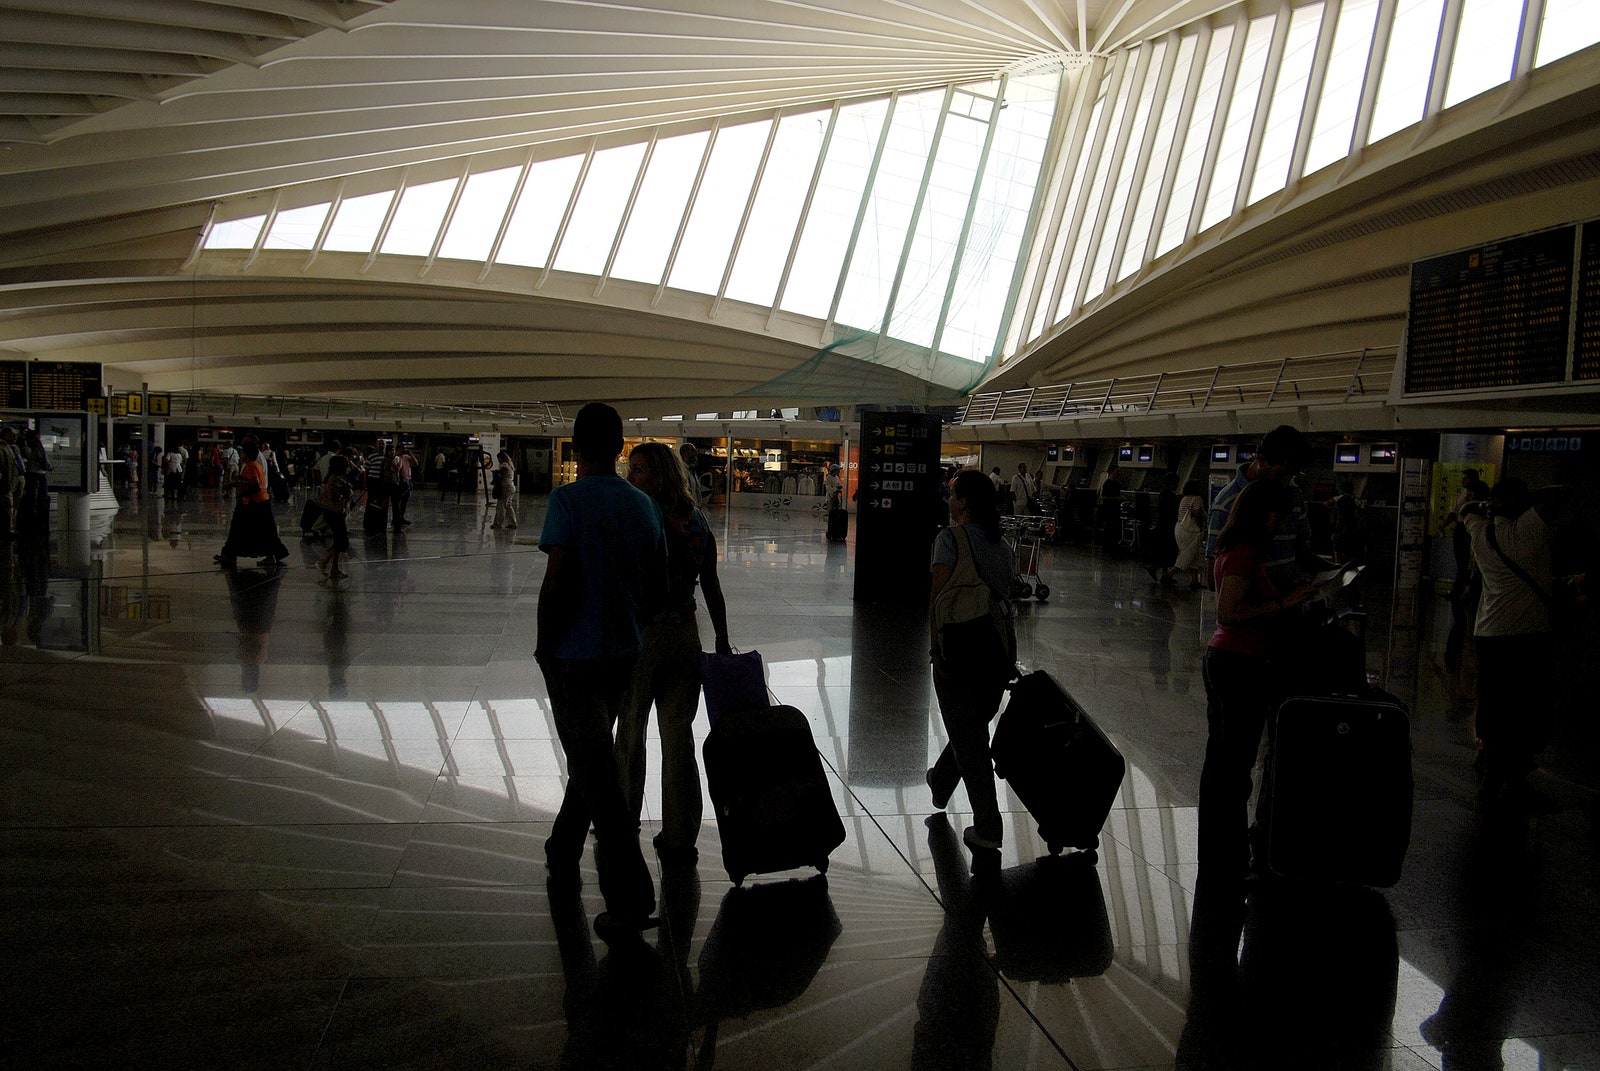 Металлические “ребра” аэропорта Бильбао.